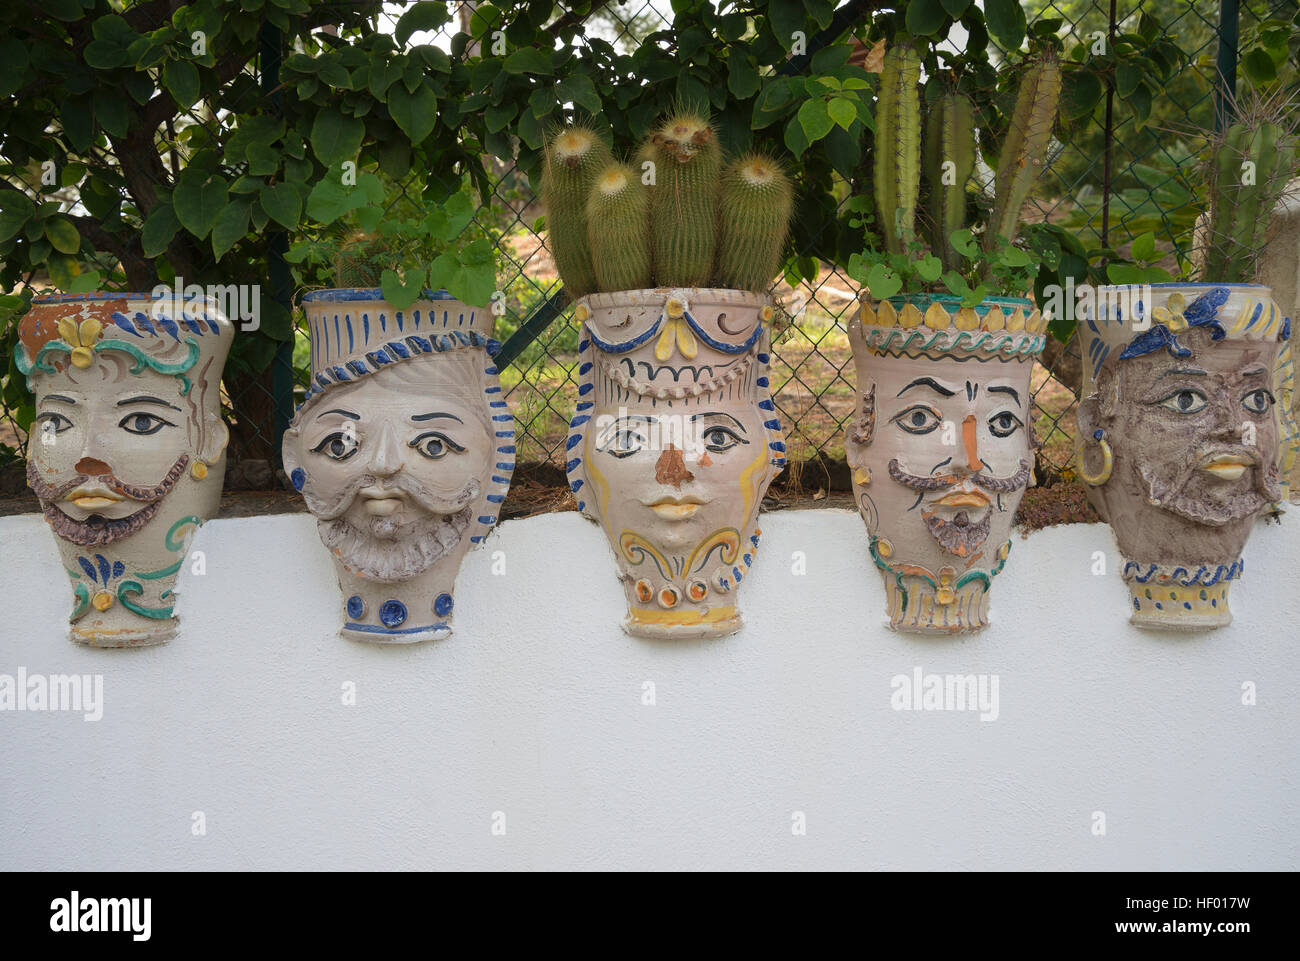 Visages peints sur les pots de fleurs en céramique sicilienne mauresque, pots de fleurs, l'île de Vulcano, îles éoliennes, italie Banque D'Images